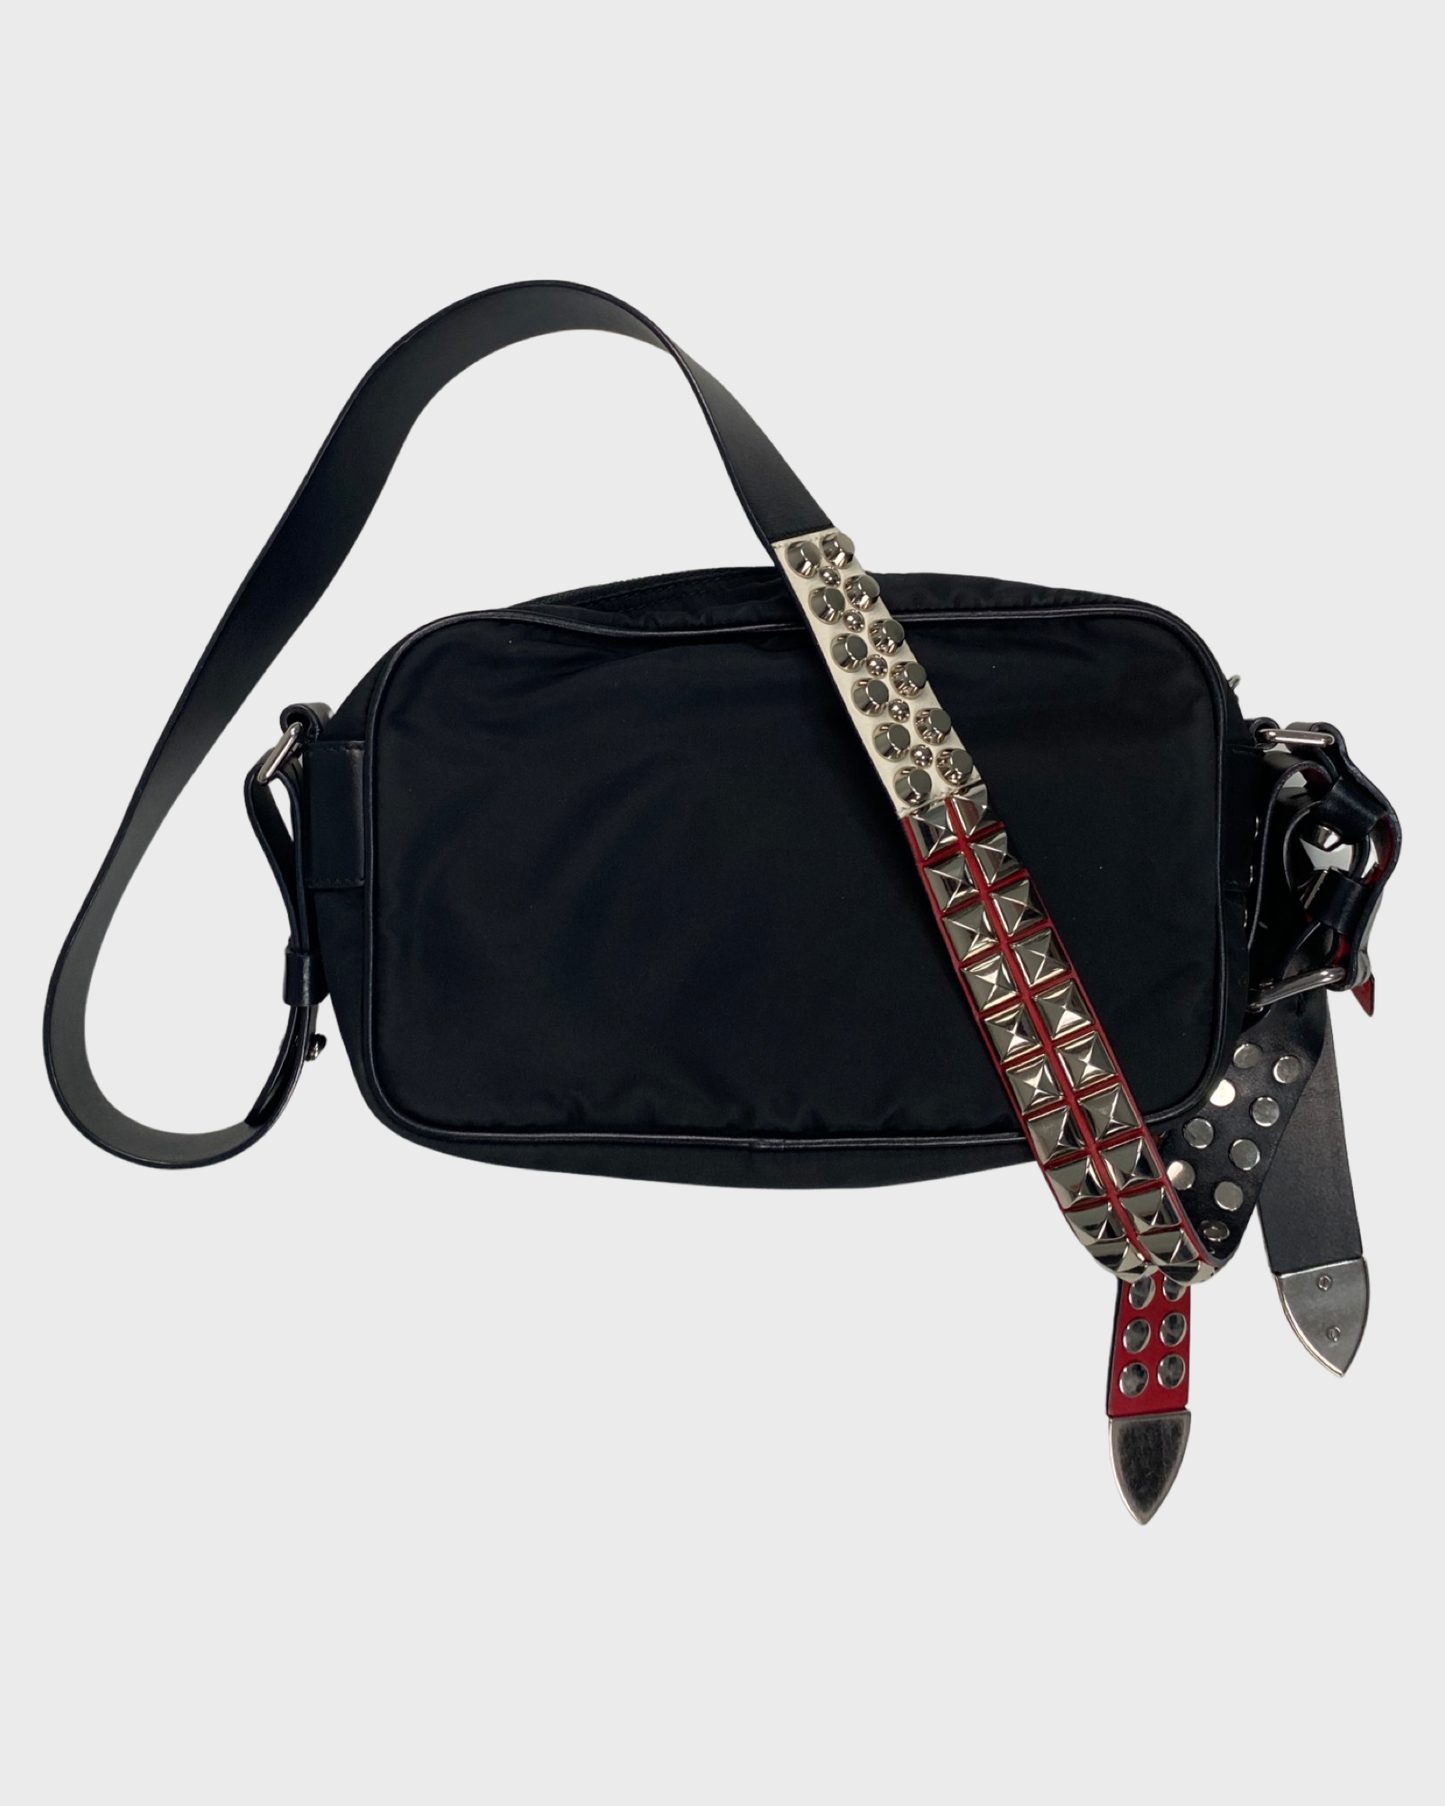 Prada AW18 Studded Rockstar Bag with red details SZ:OS